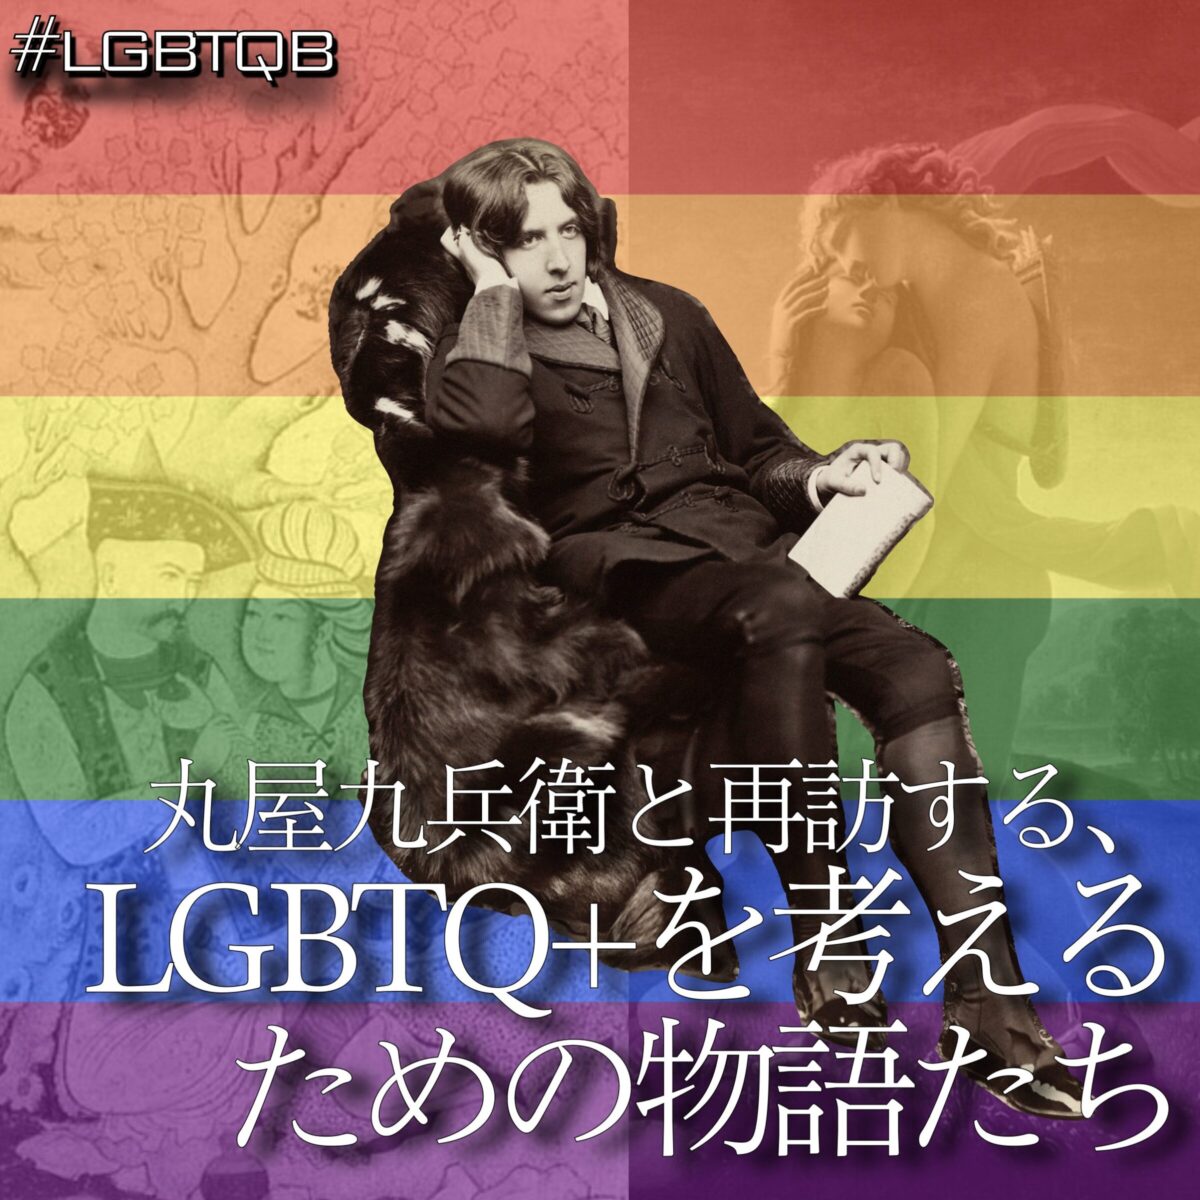 丸屋九兵衛と再訪する、LGBTQ+を考えるための物語たち